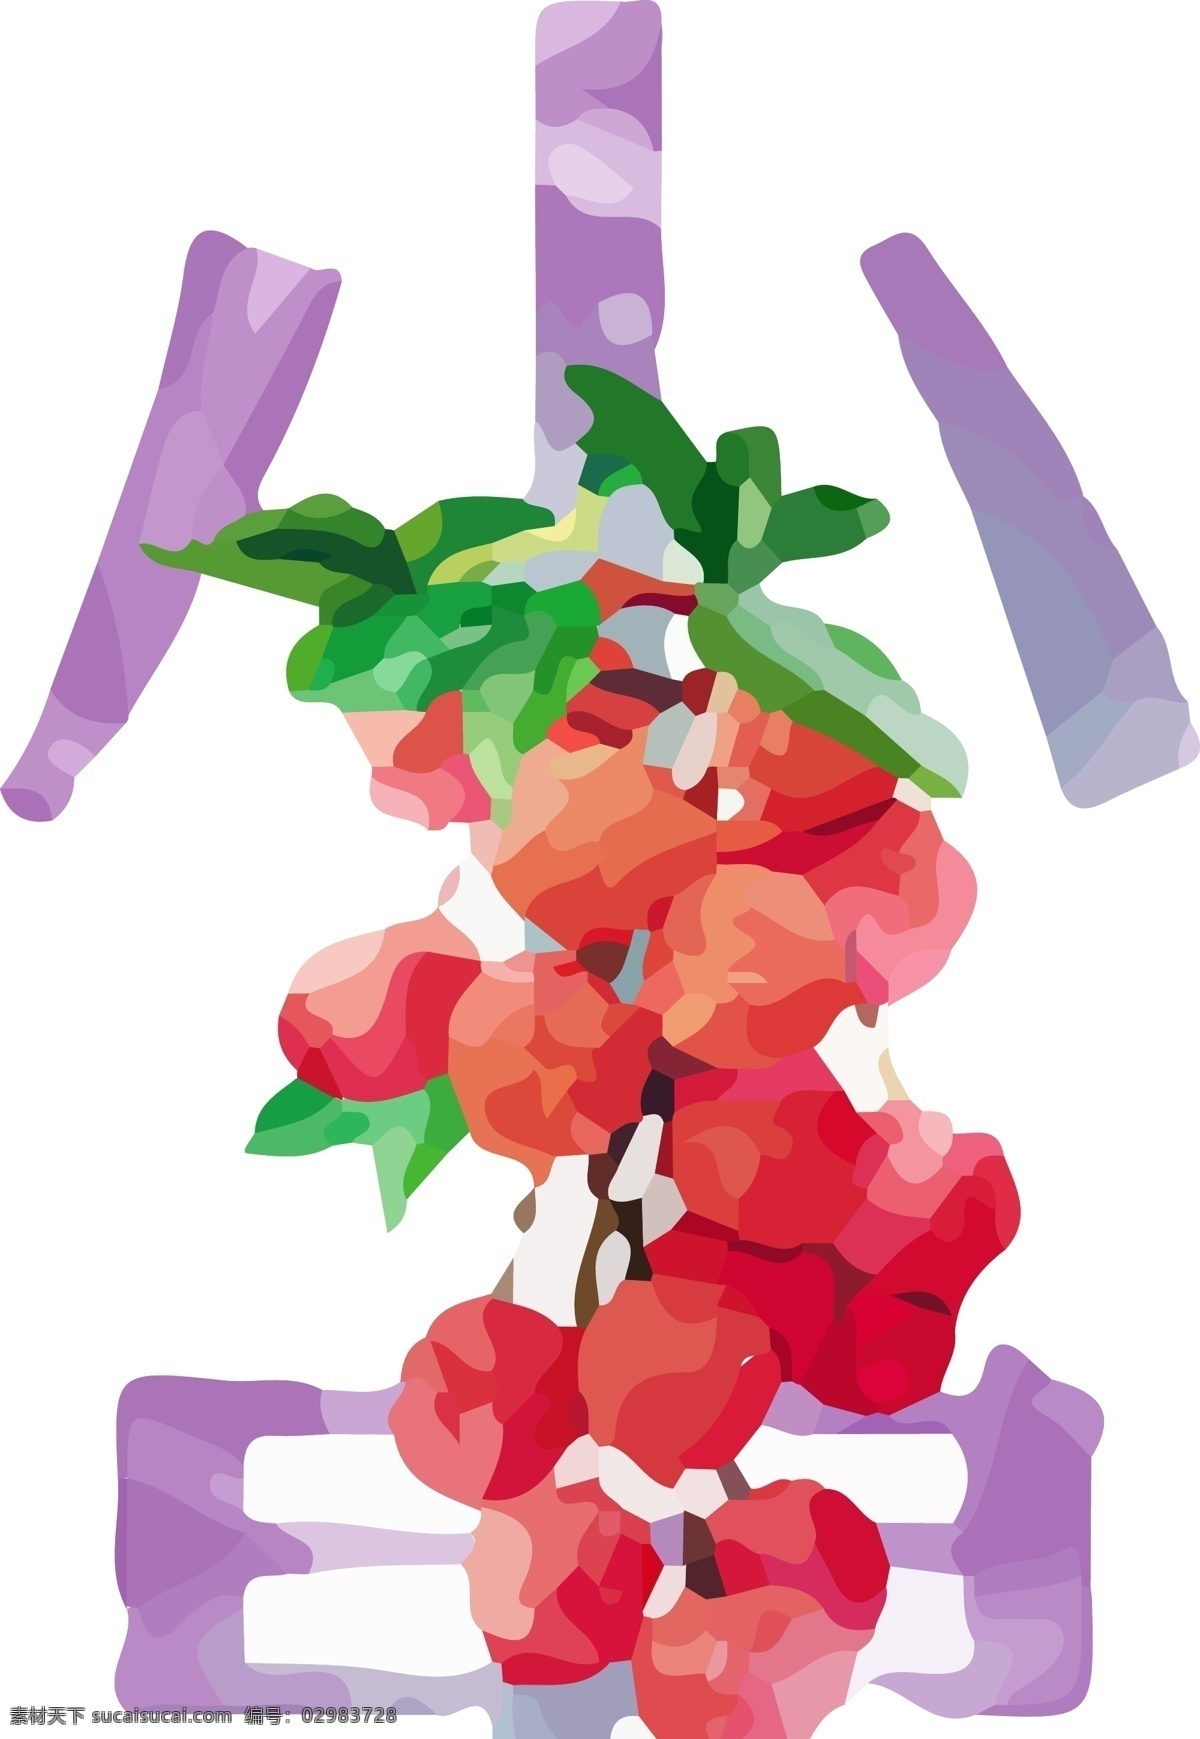 原创 手绘 精选 水彩 绘画 艺术 字 小暑 二十四节气 草莓 传统节日